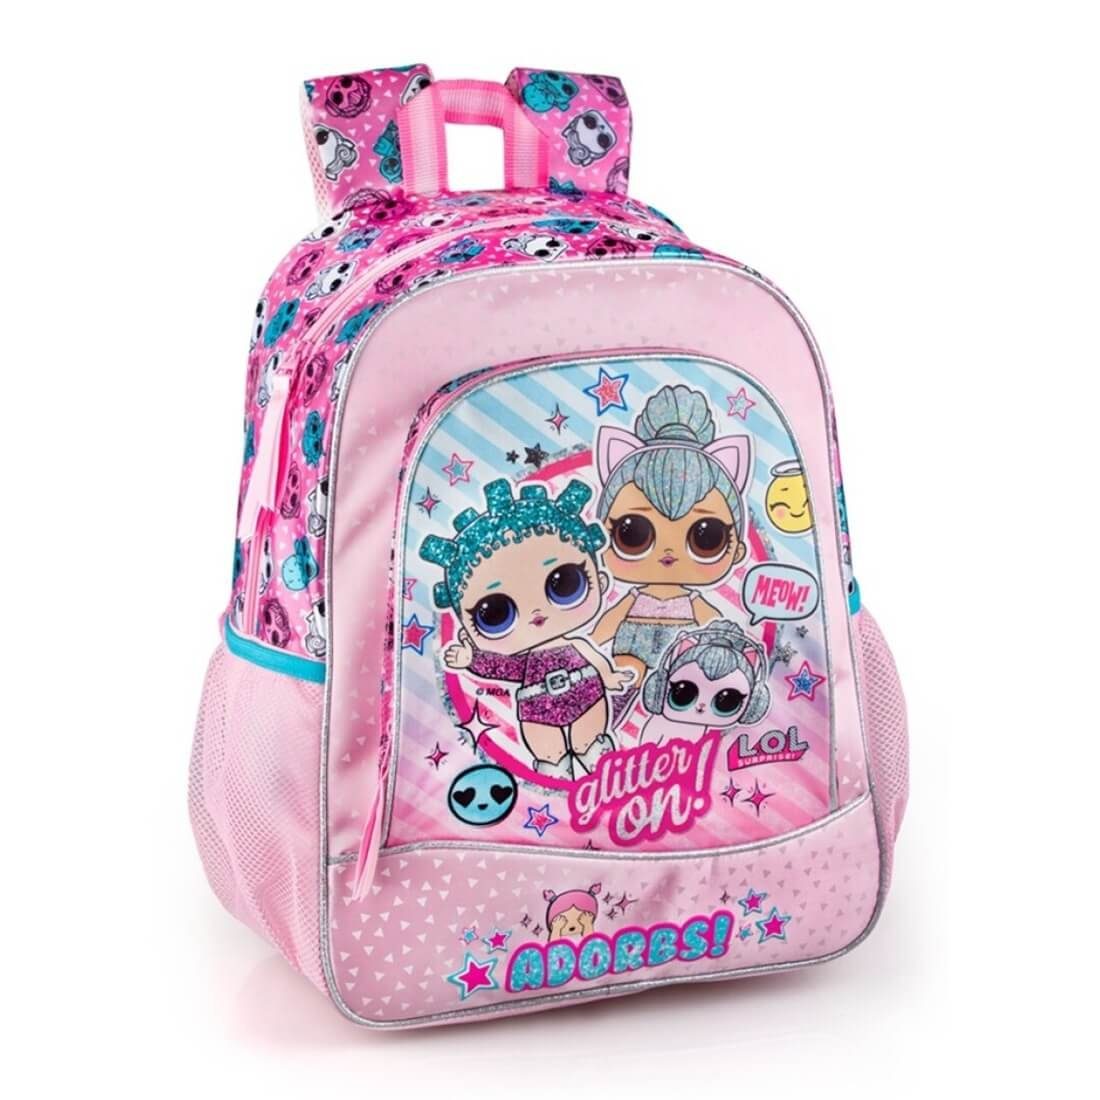 LOL Surprise Rucksack Mädchen Tagesrucksack Schultertasche Kinder-tasche Puppen 